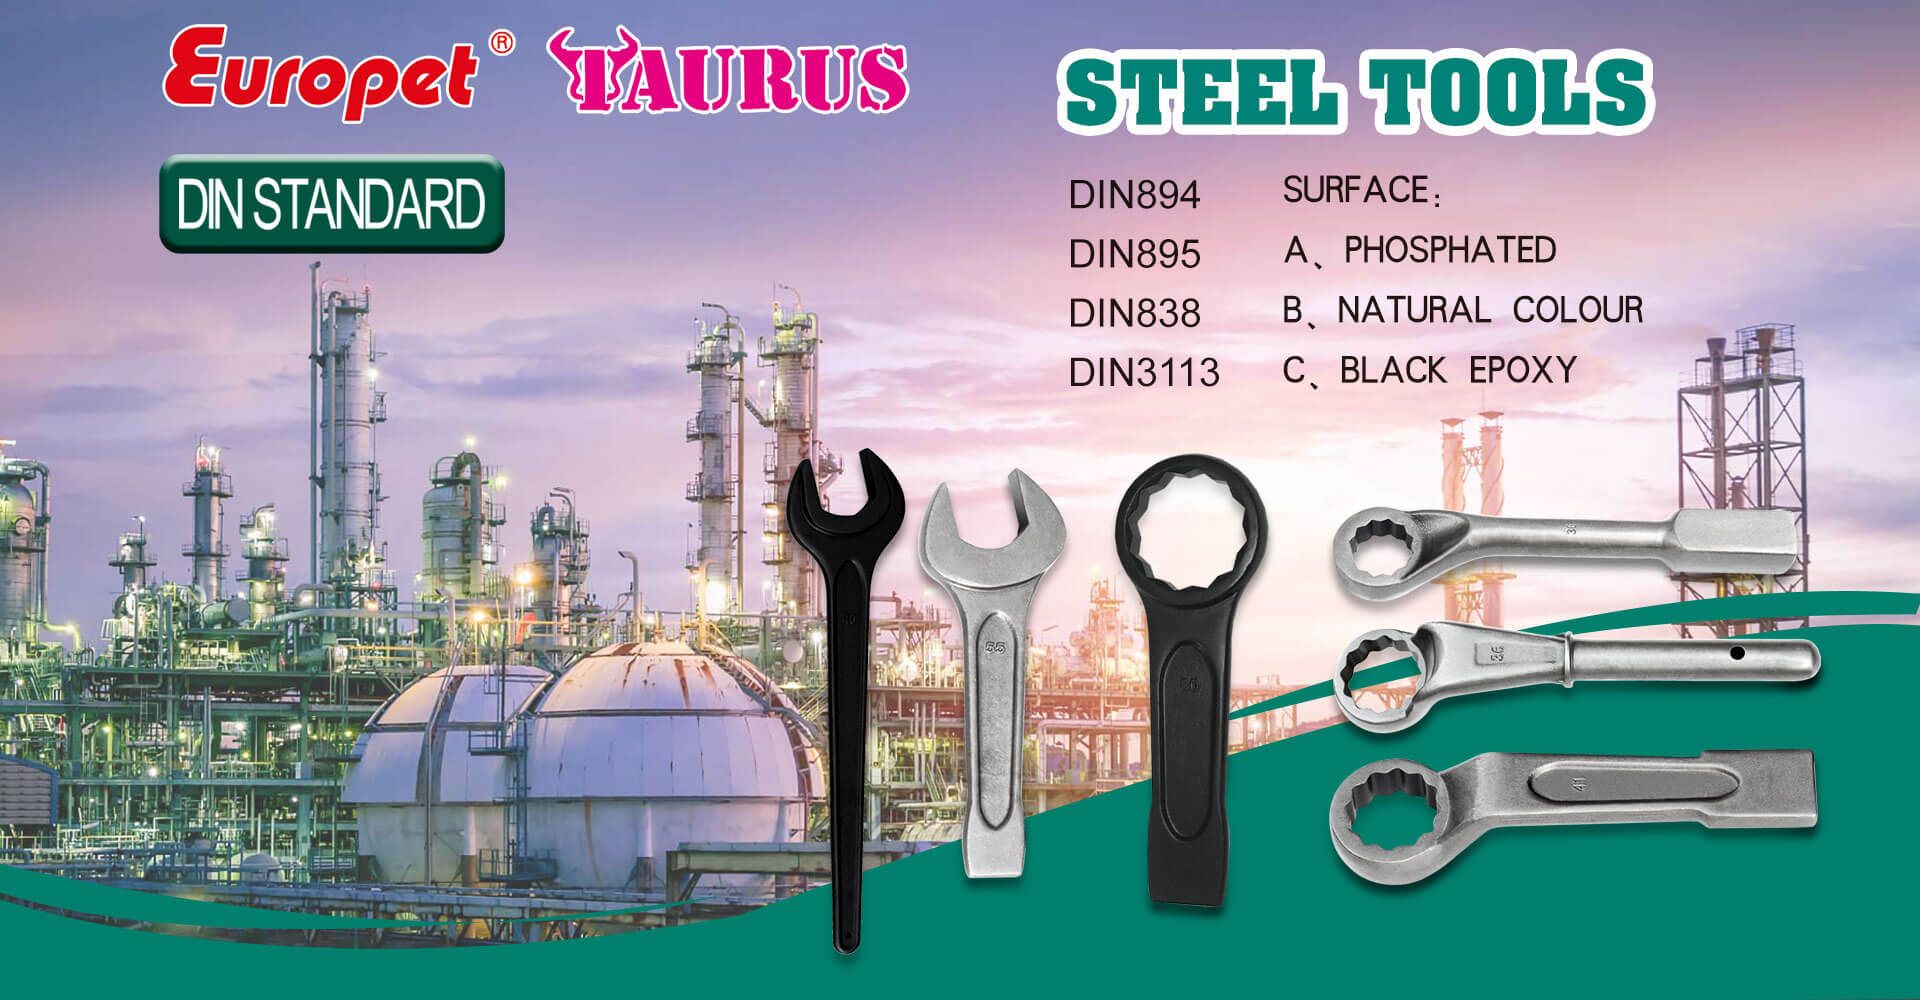 Steel tools